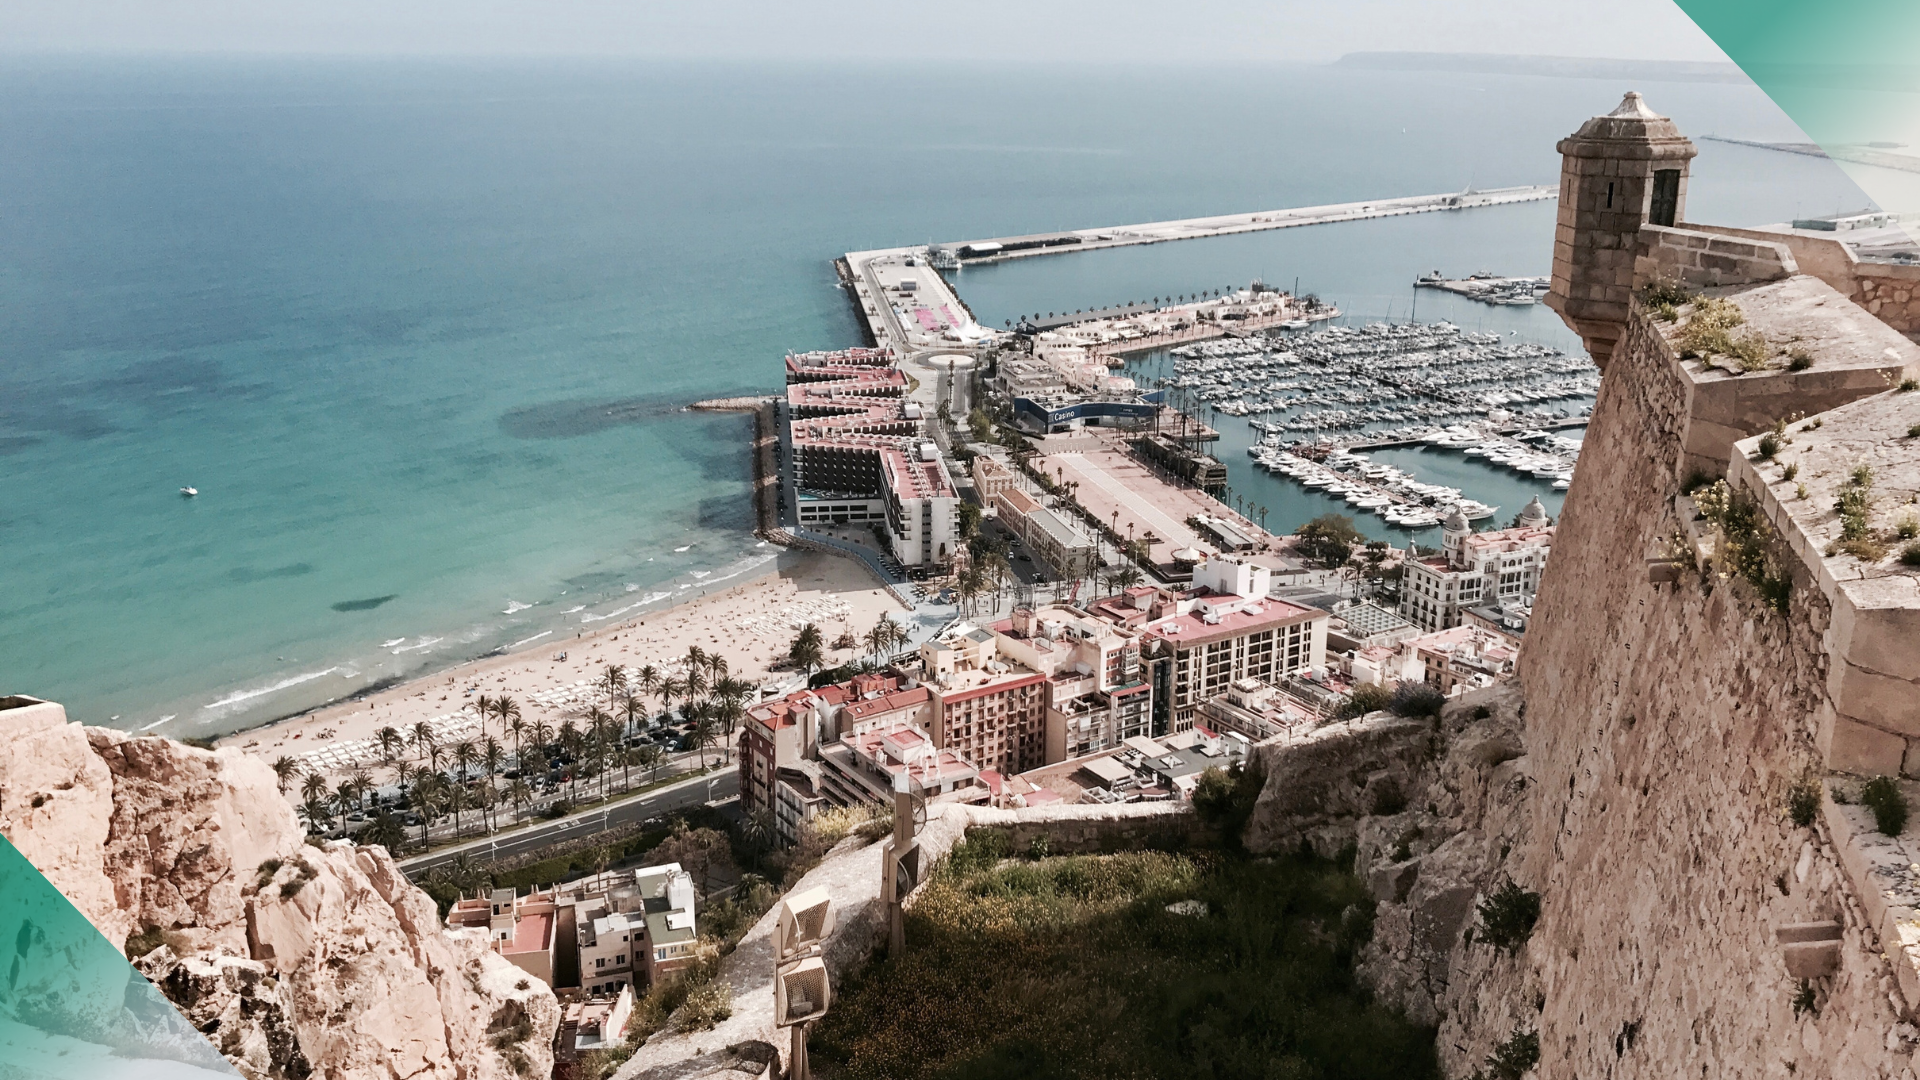 Reglas Airbnb en Alicante